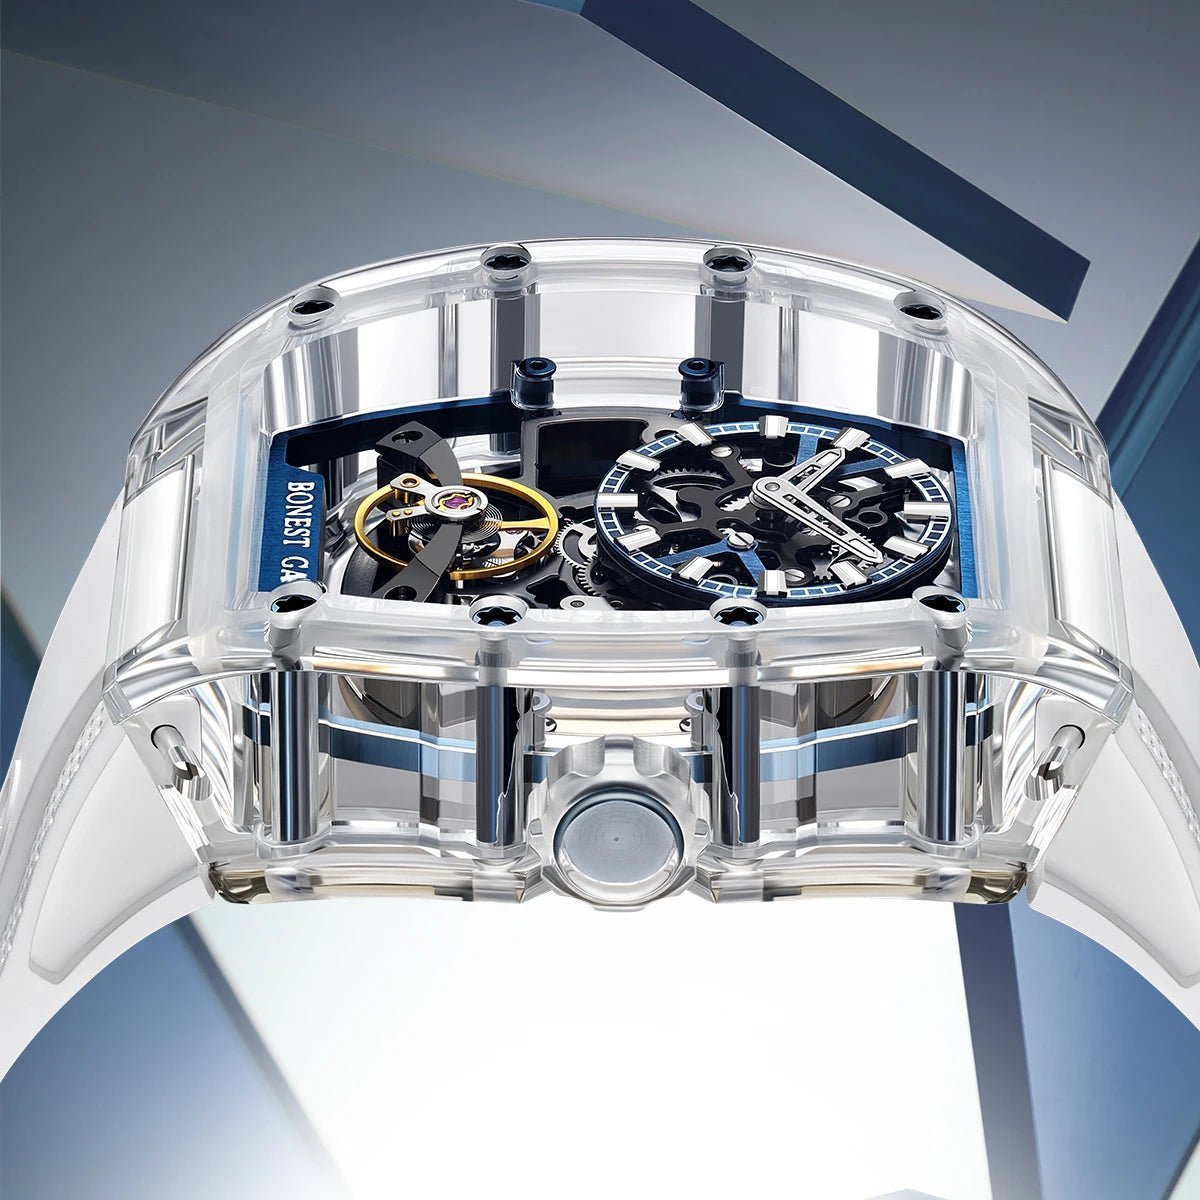 Bonest Gatti BG9960 Reverse Gravity Watch - Uniquely You Online - Watch